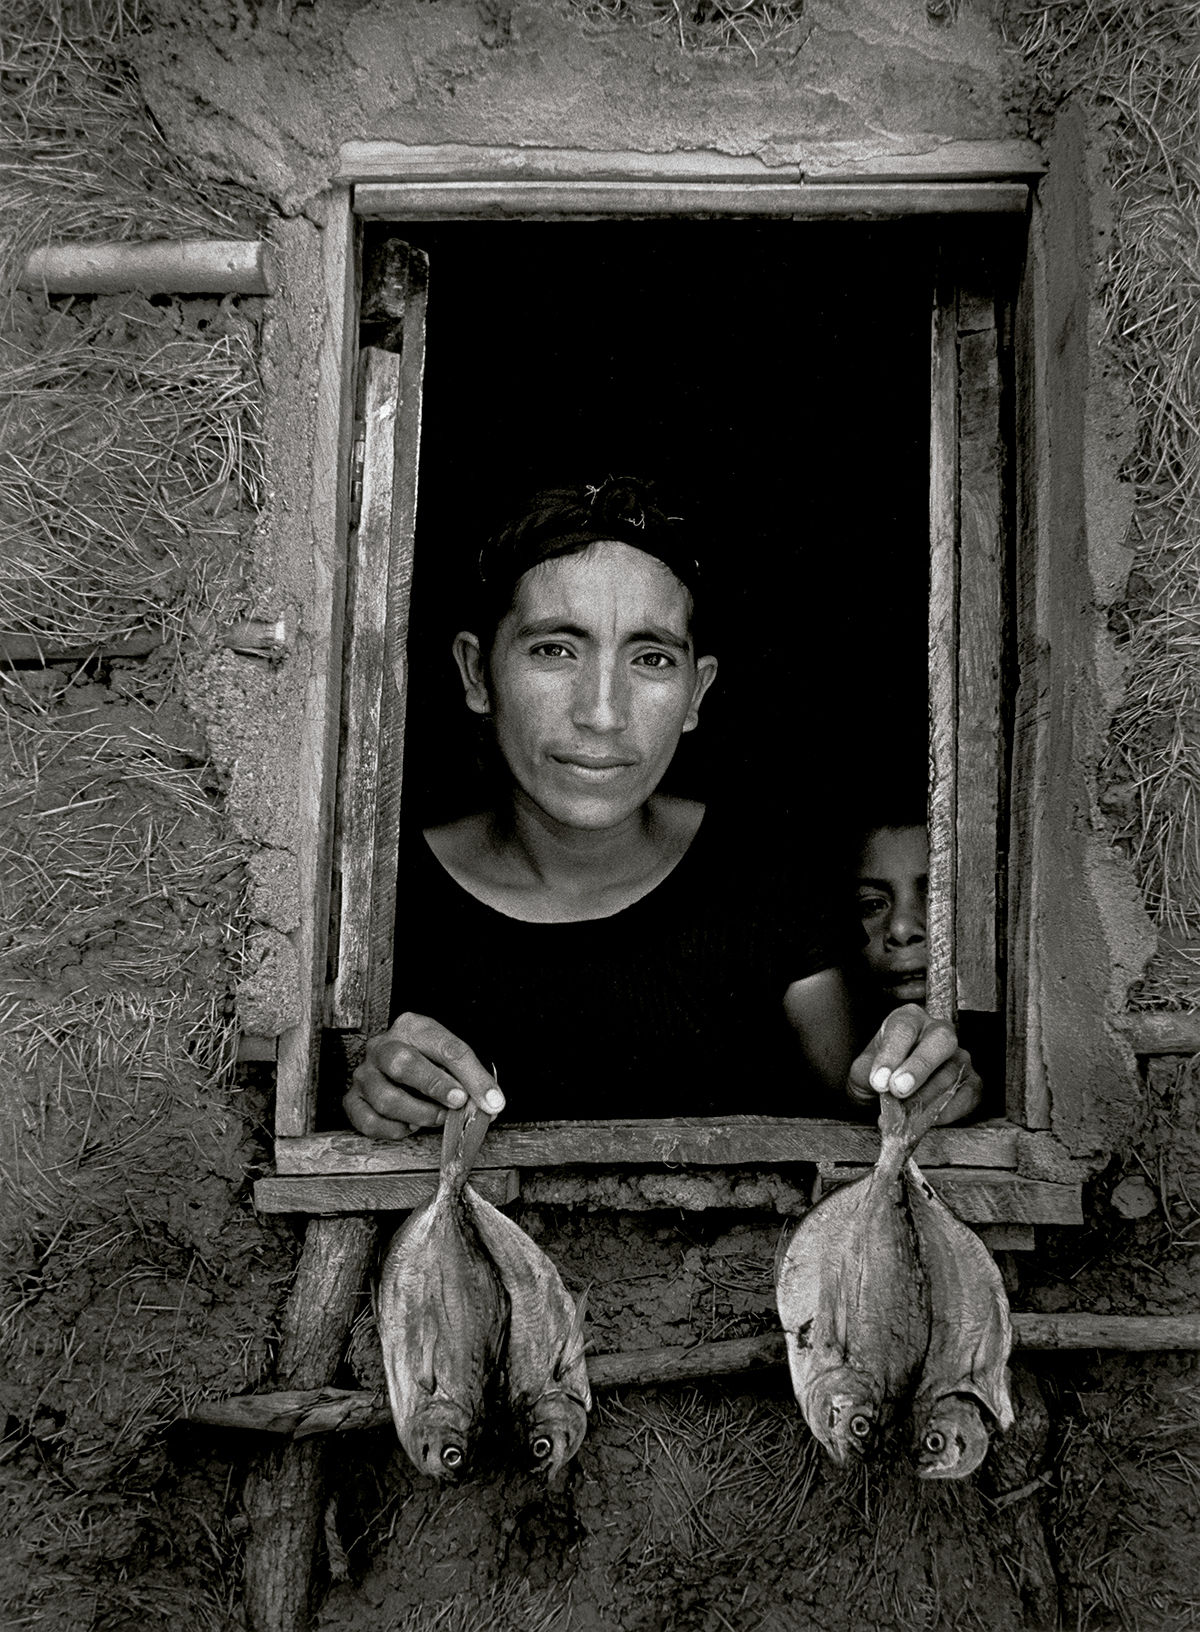 Cuatro pescaditos, Juchitán, México © Graciela Iturbide. © COLECCIONES Fundación MAPFRE